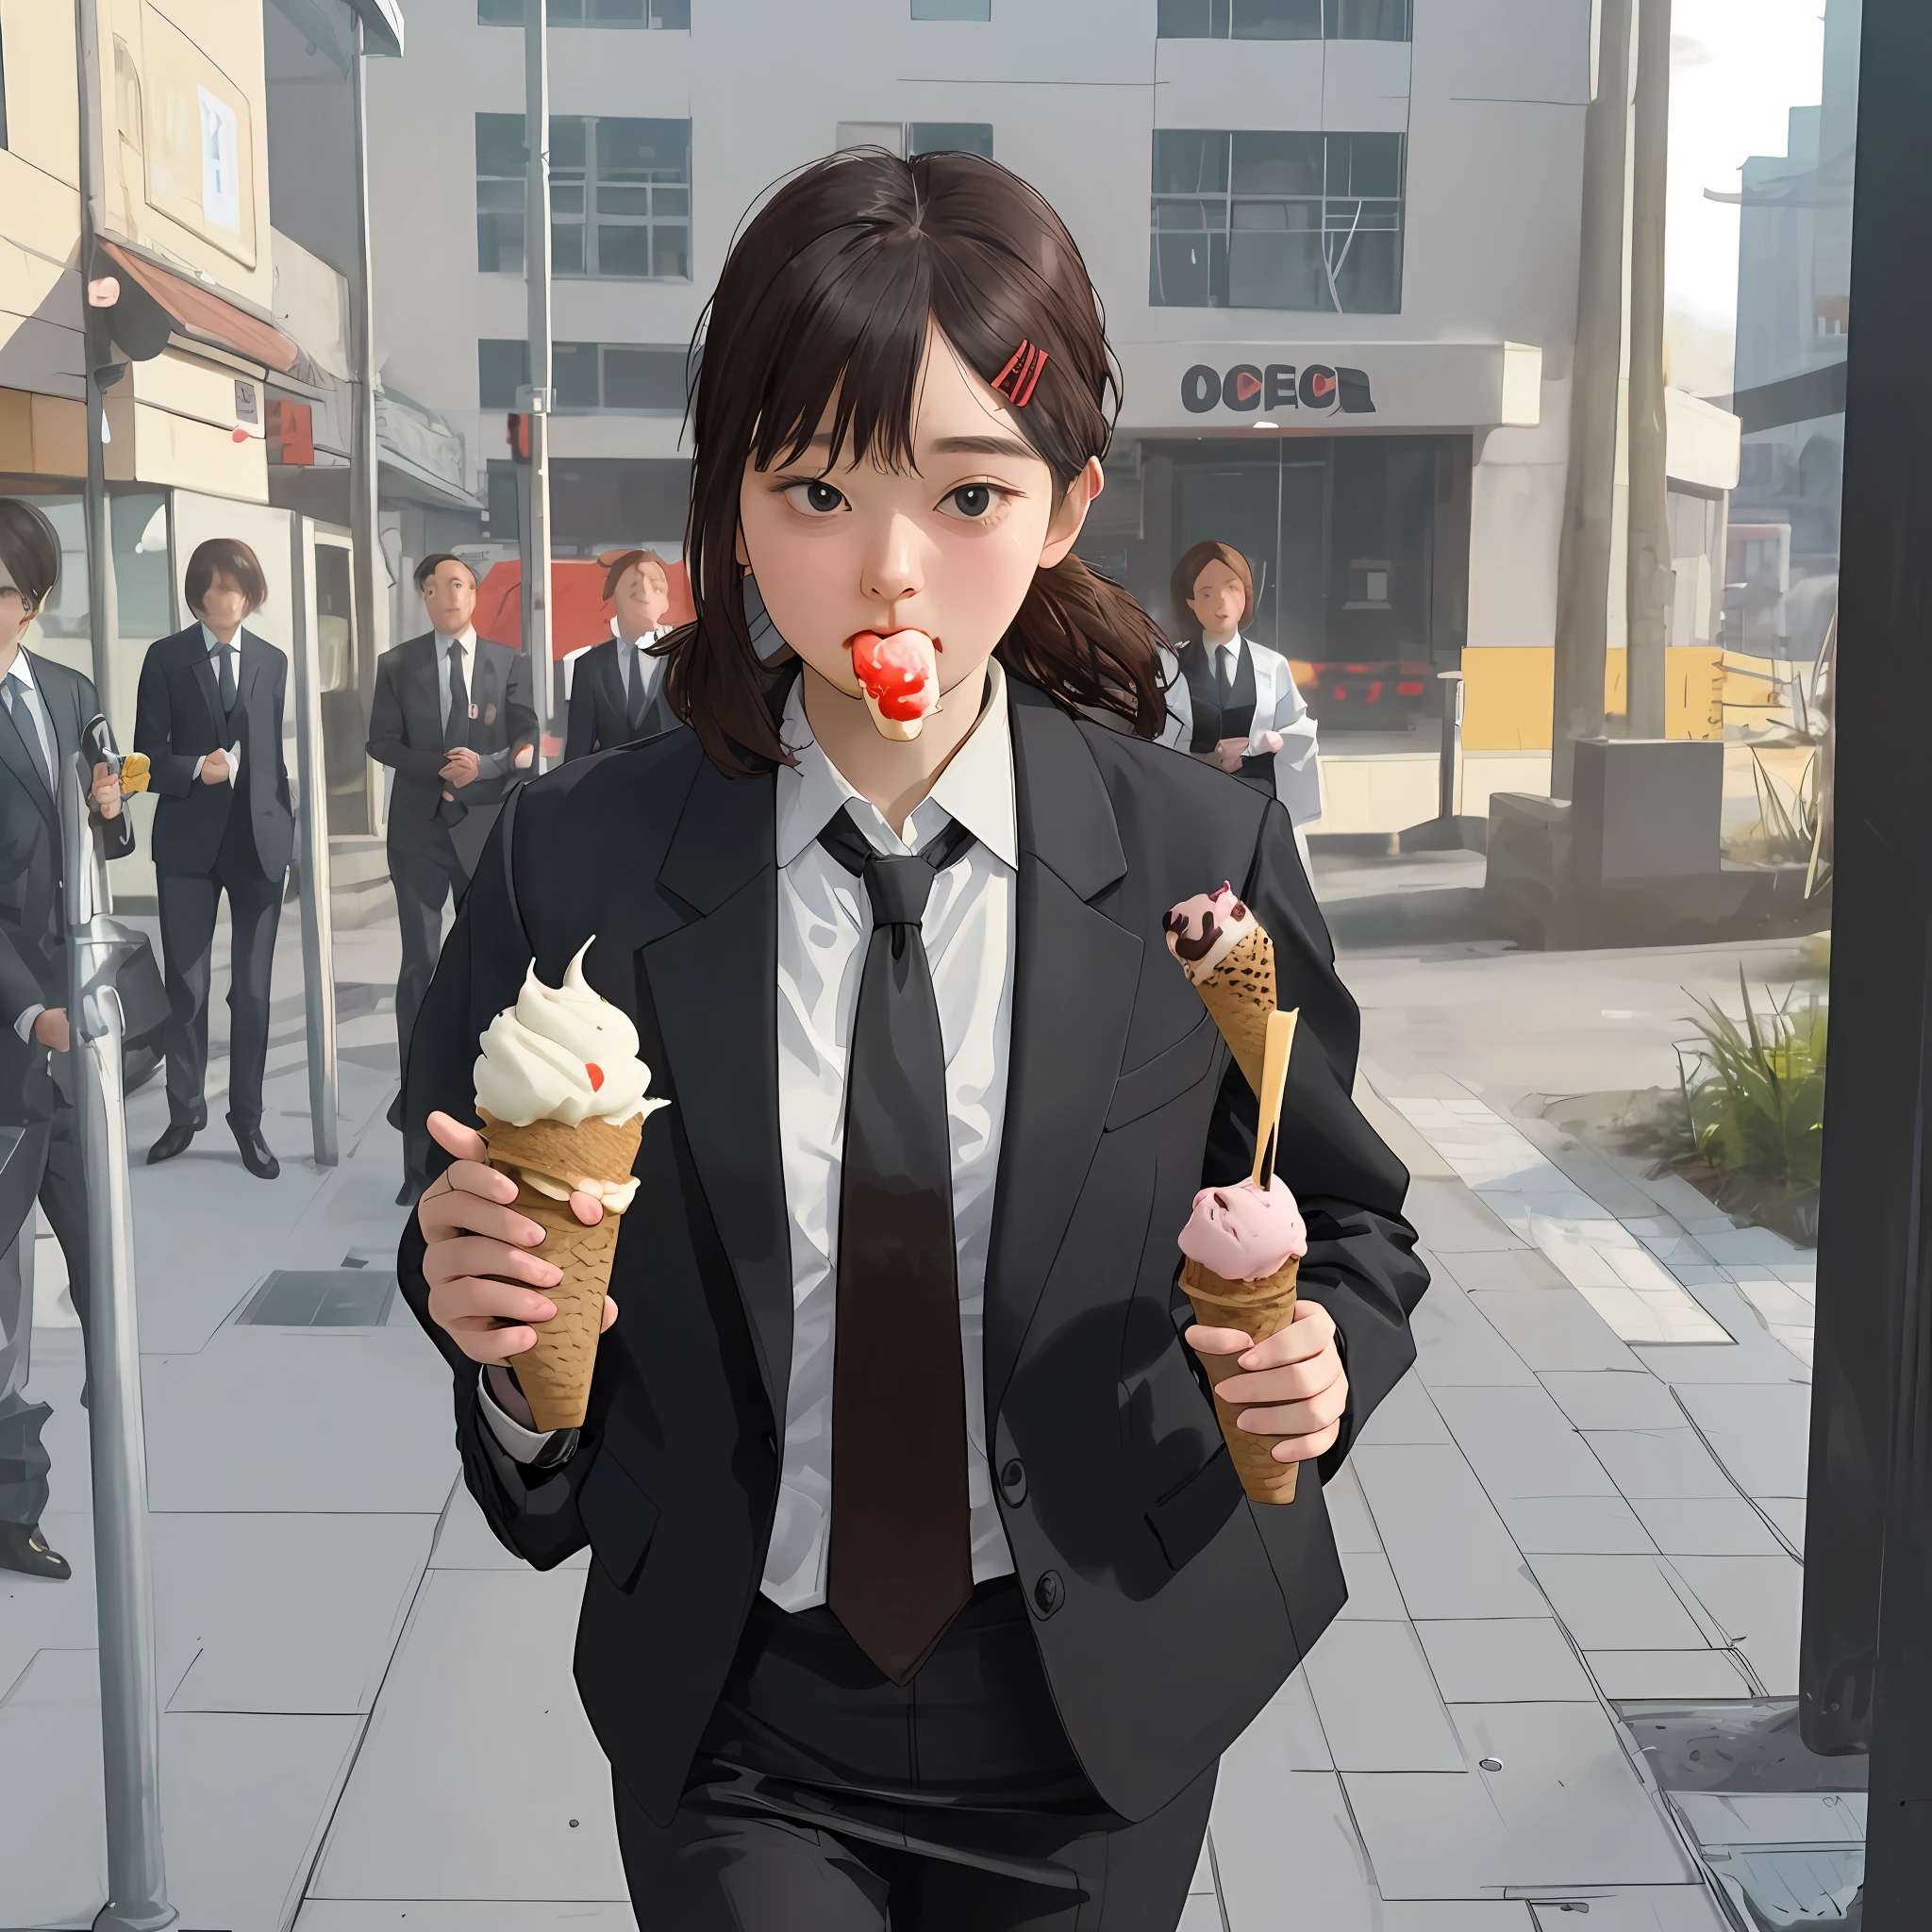 (1 名女孩) 害羞地吃冰淇淋, 穿著辦公室套裝, 夾克和領帶, 漫步街頭, 超詳細, 高畫質.